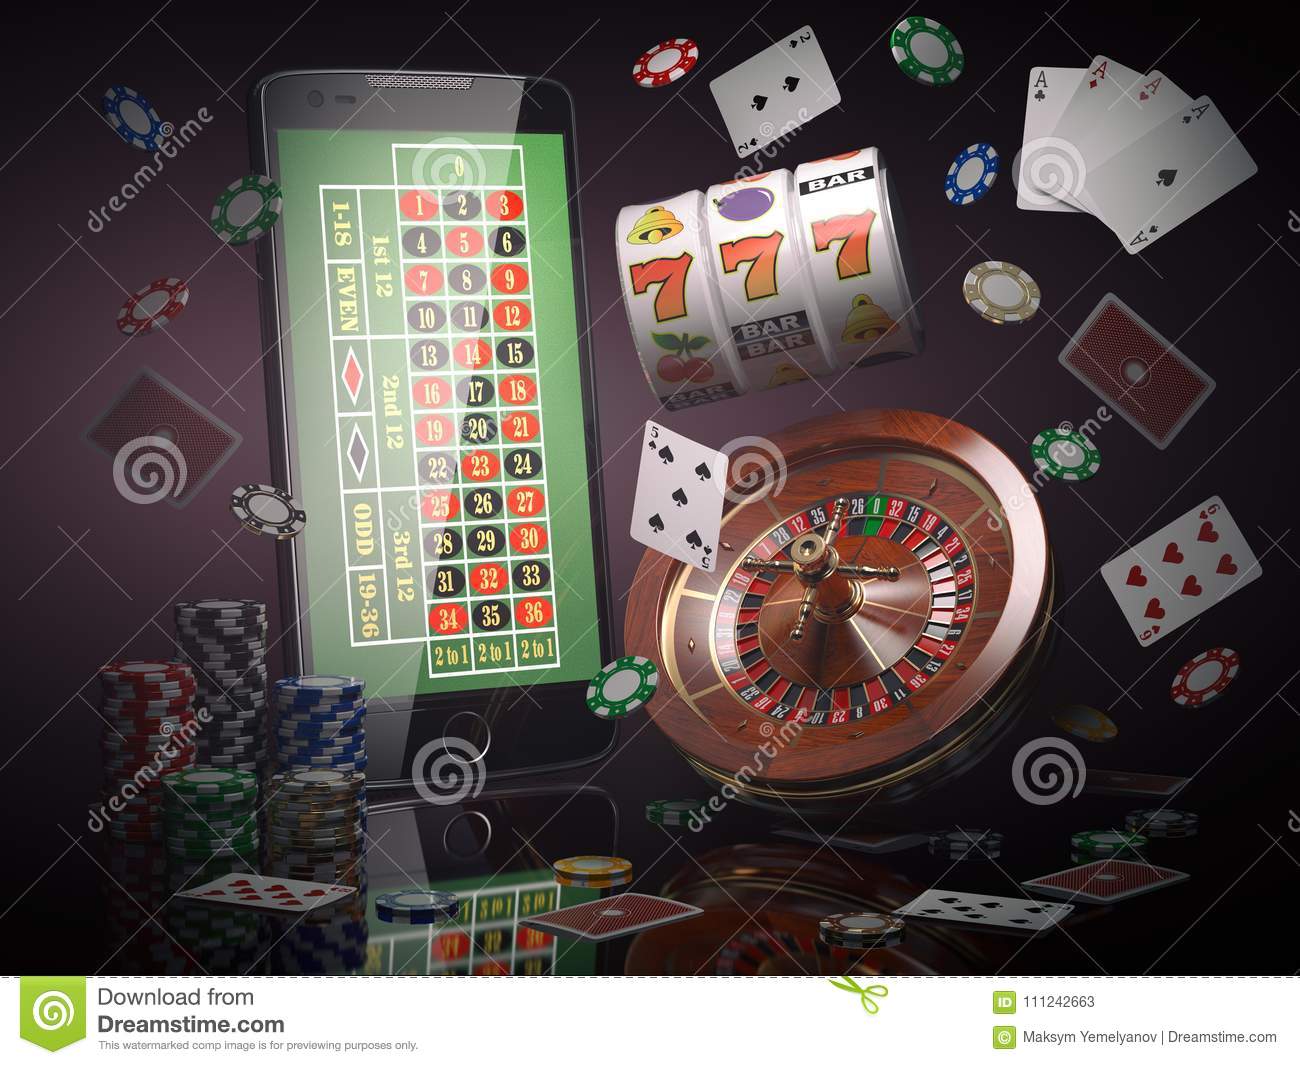 Slotastic casino